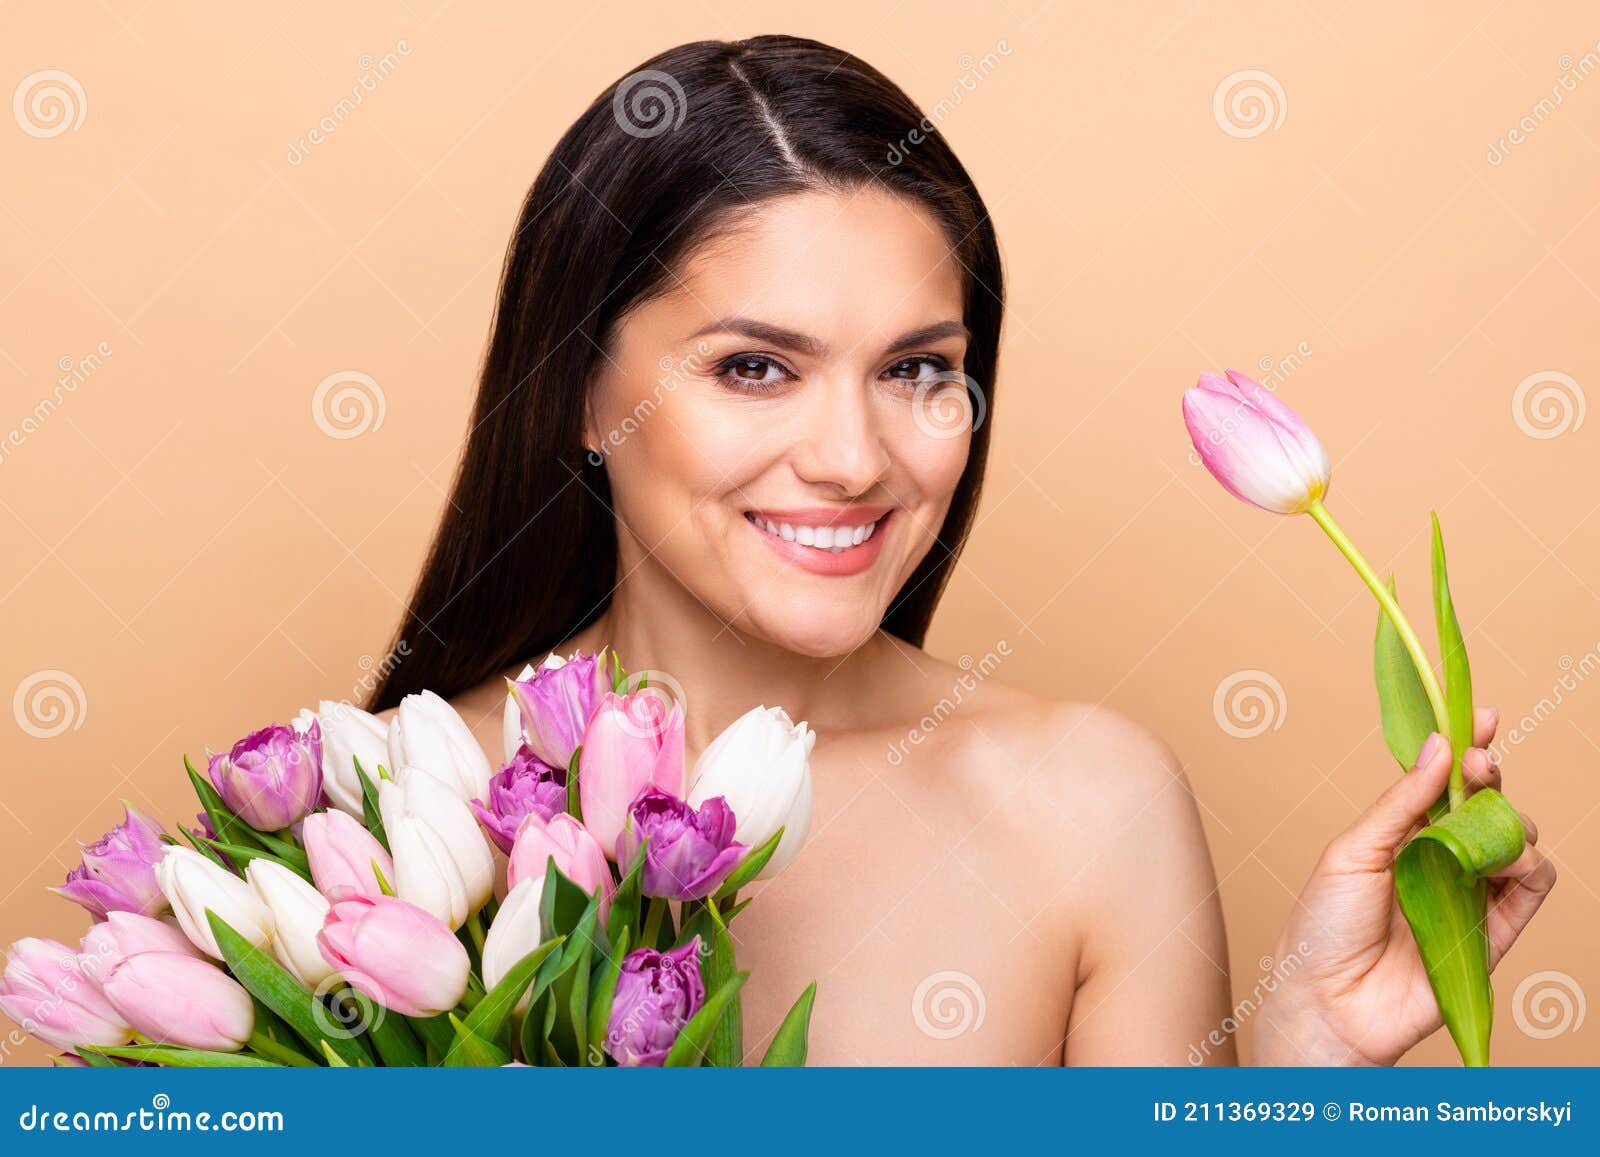 Beautiful Tulip Porn Pictures